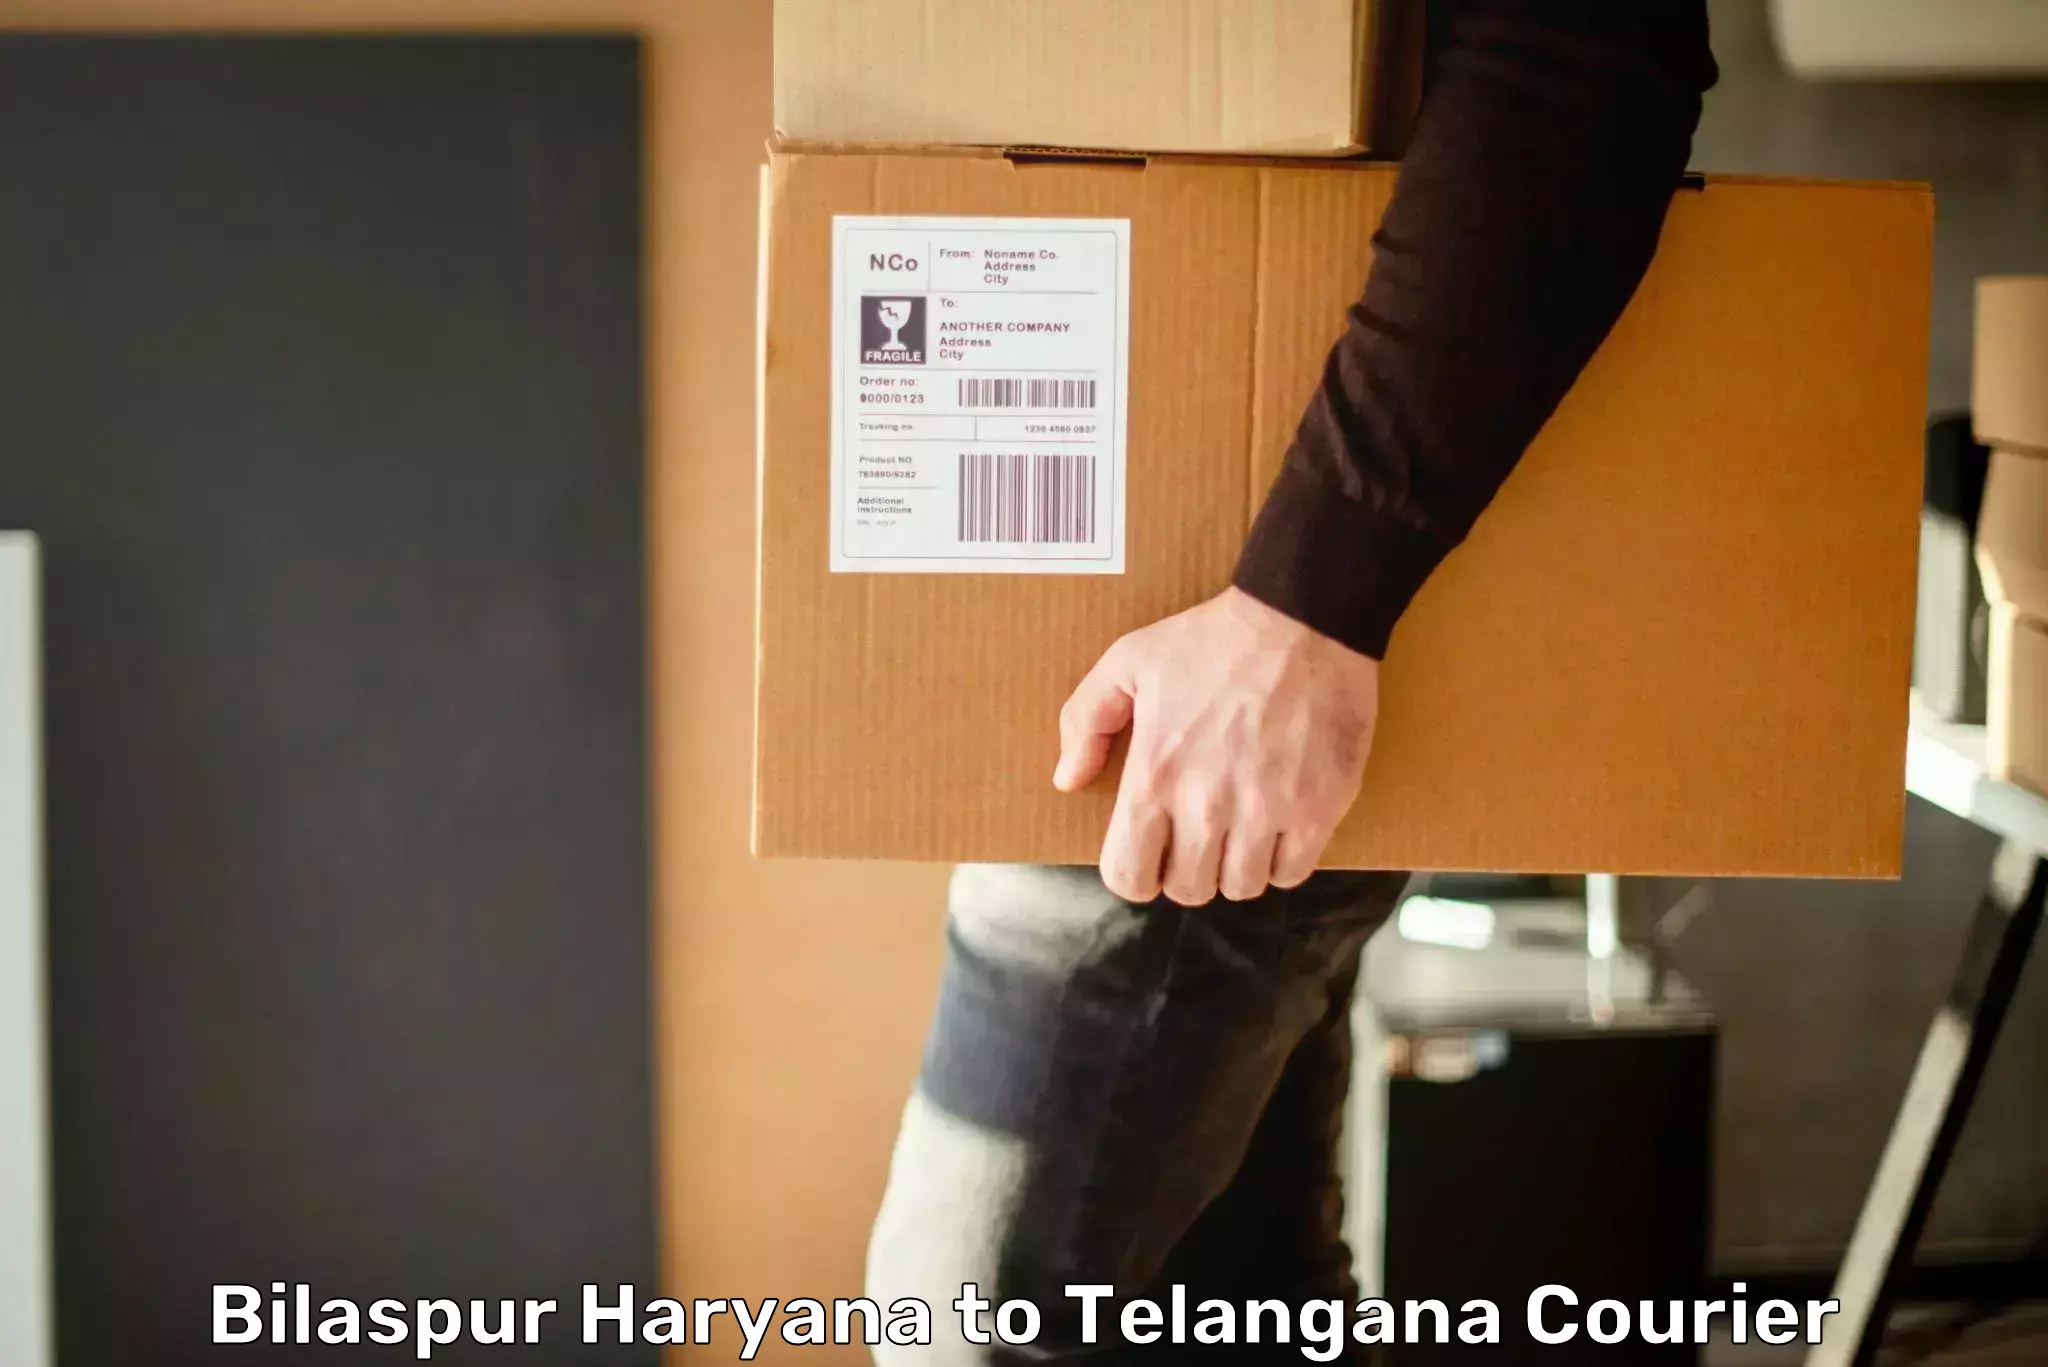 Efficient logistics management Bilaspur Haryana to Rudrangi